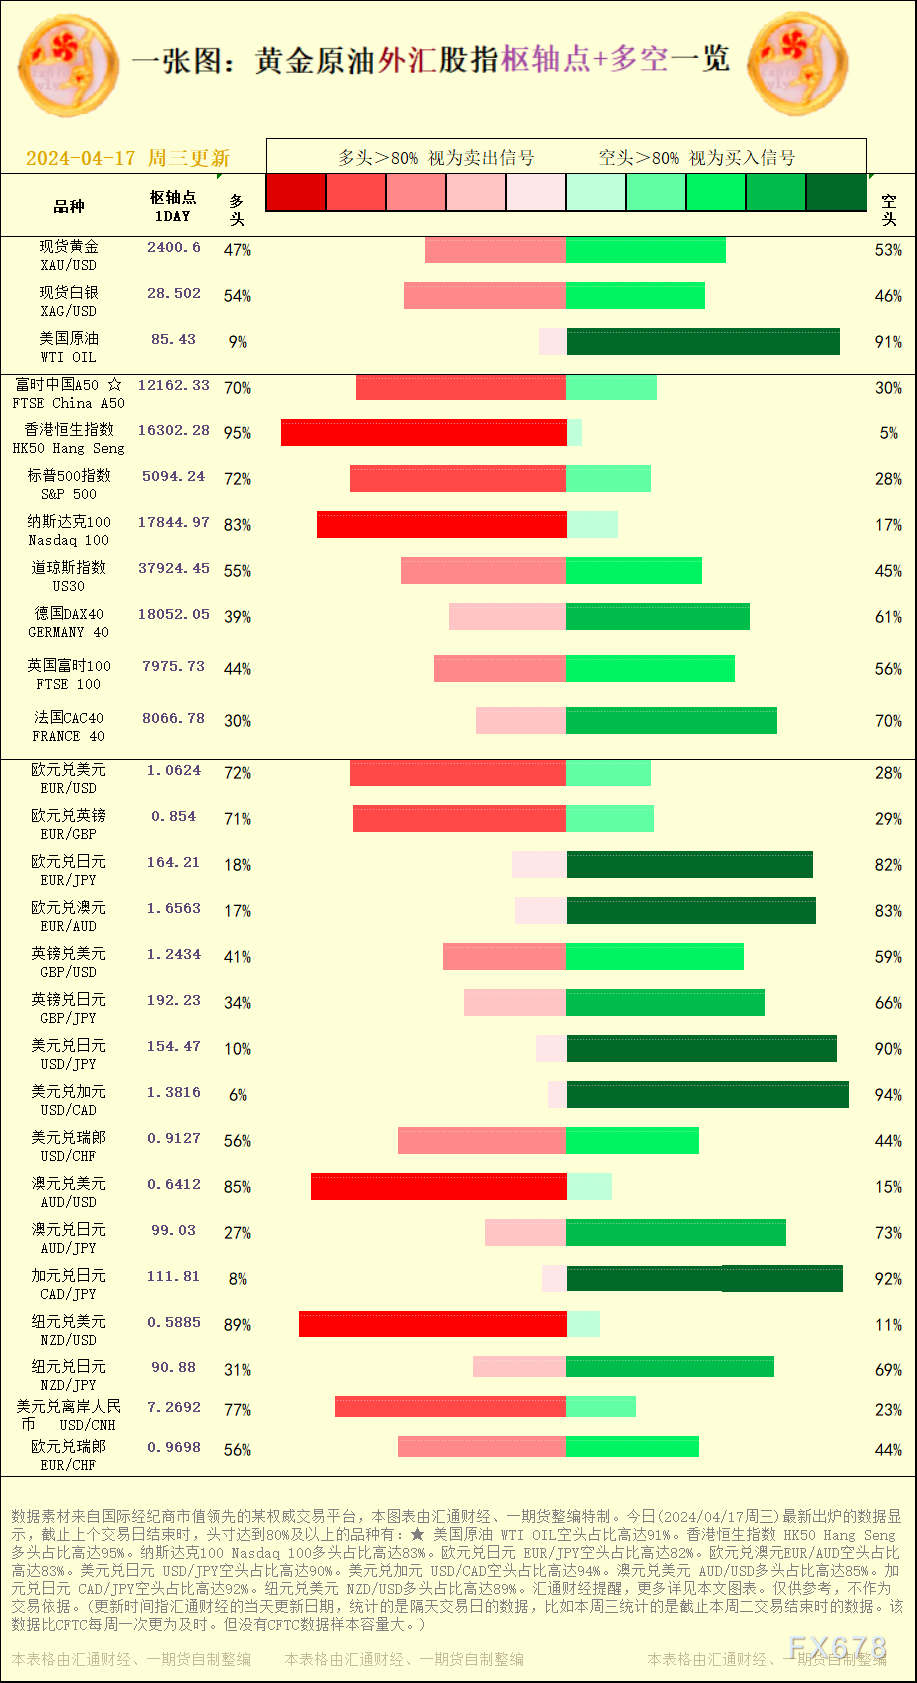 美圆兑日元 USD/JPY空头占比高达90%